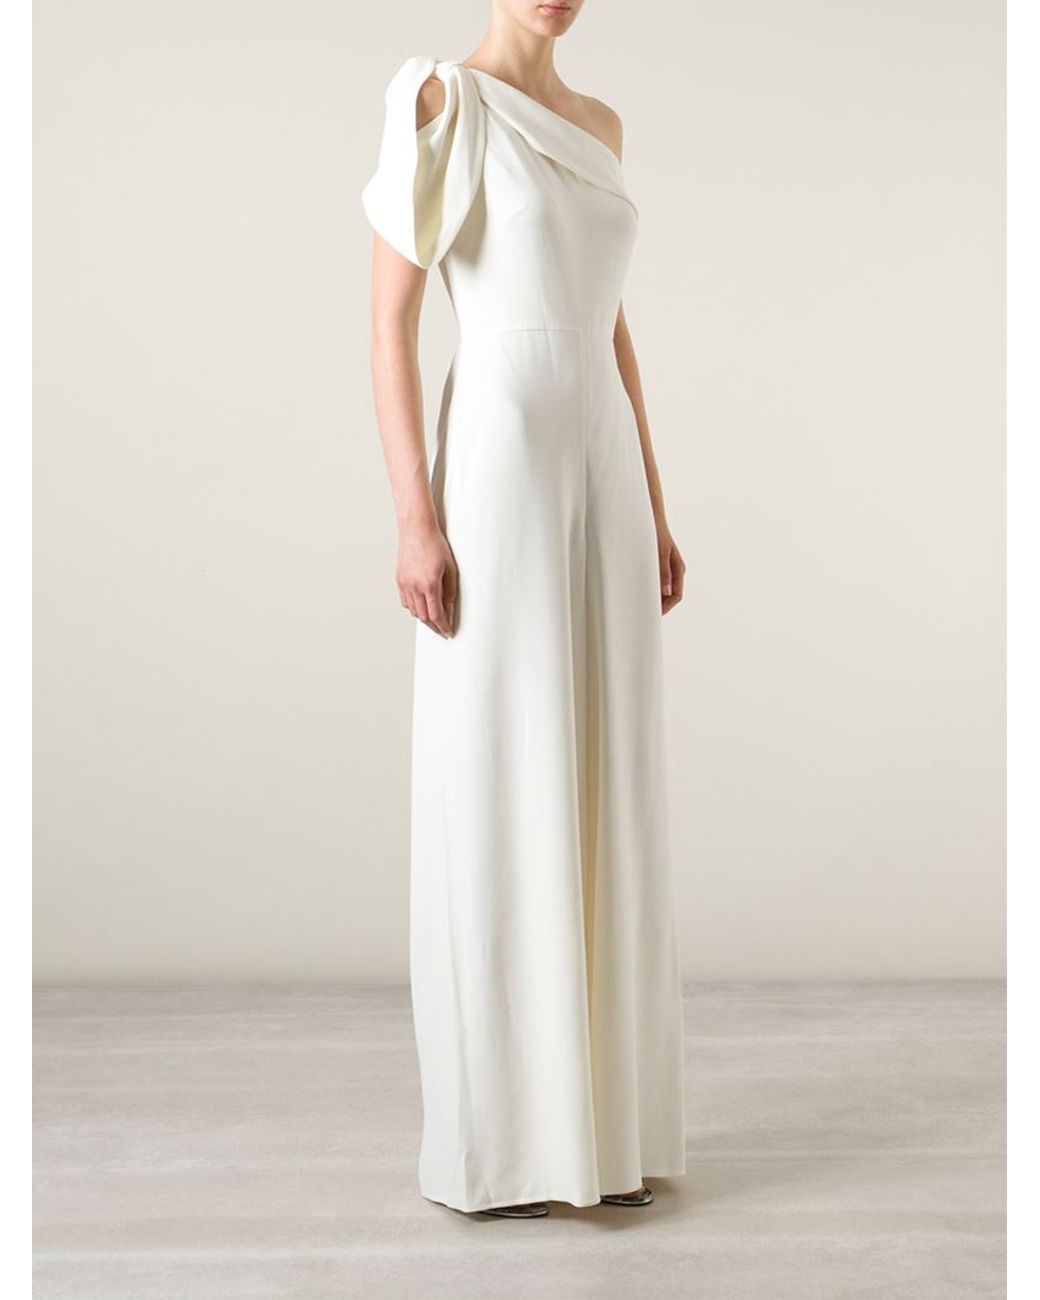 Alexander McQueen One-Shoulder Evening Gown in White | Lyst